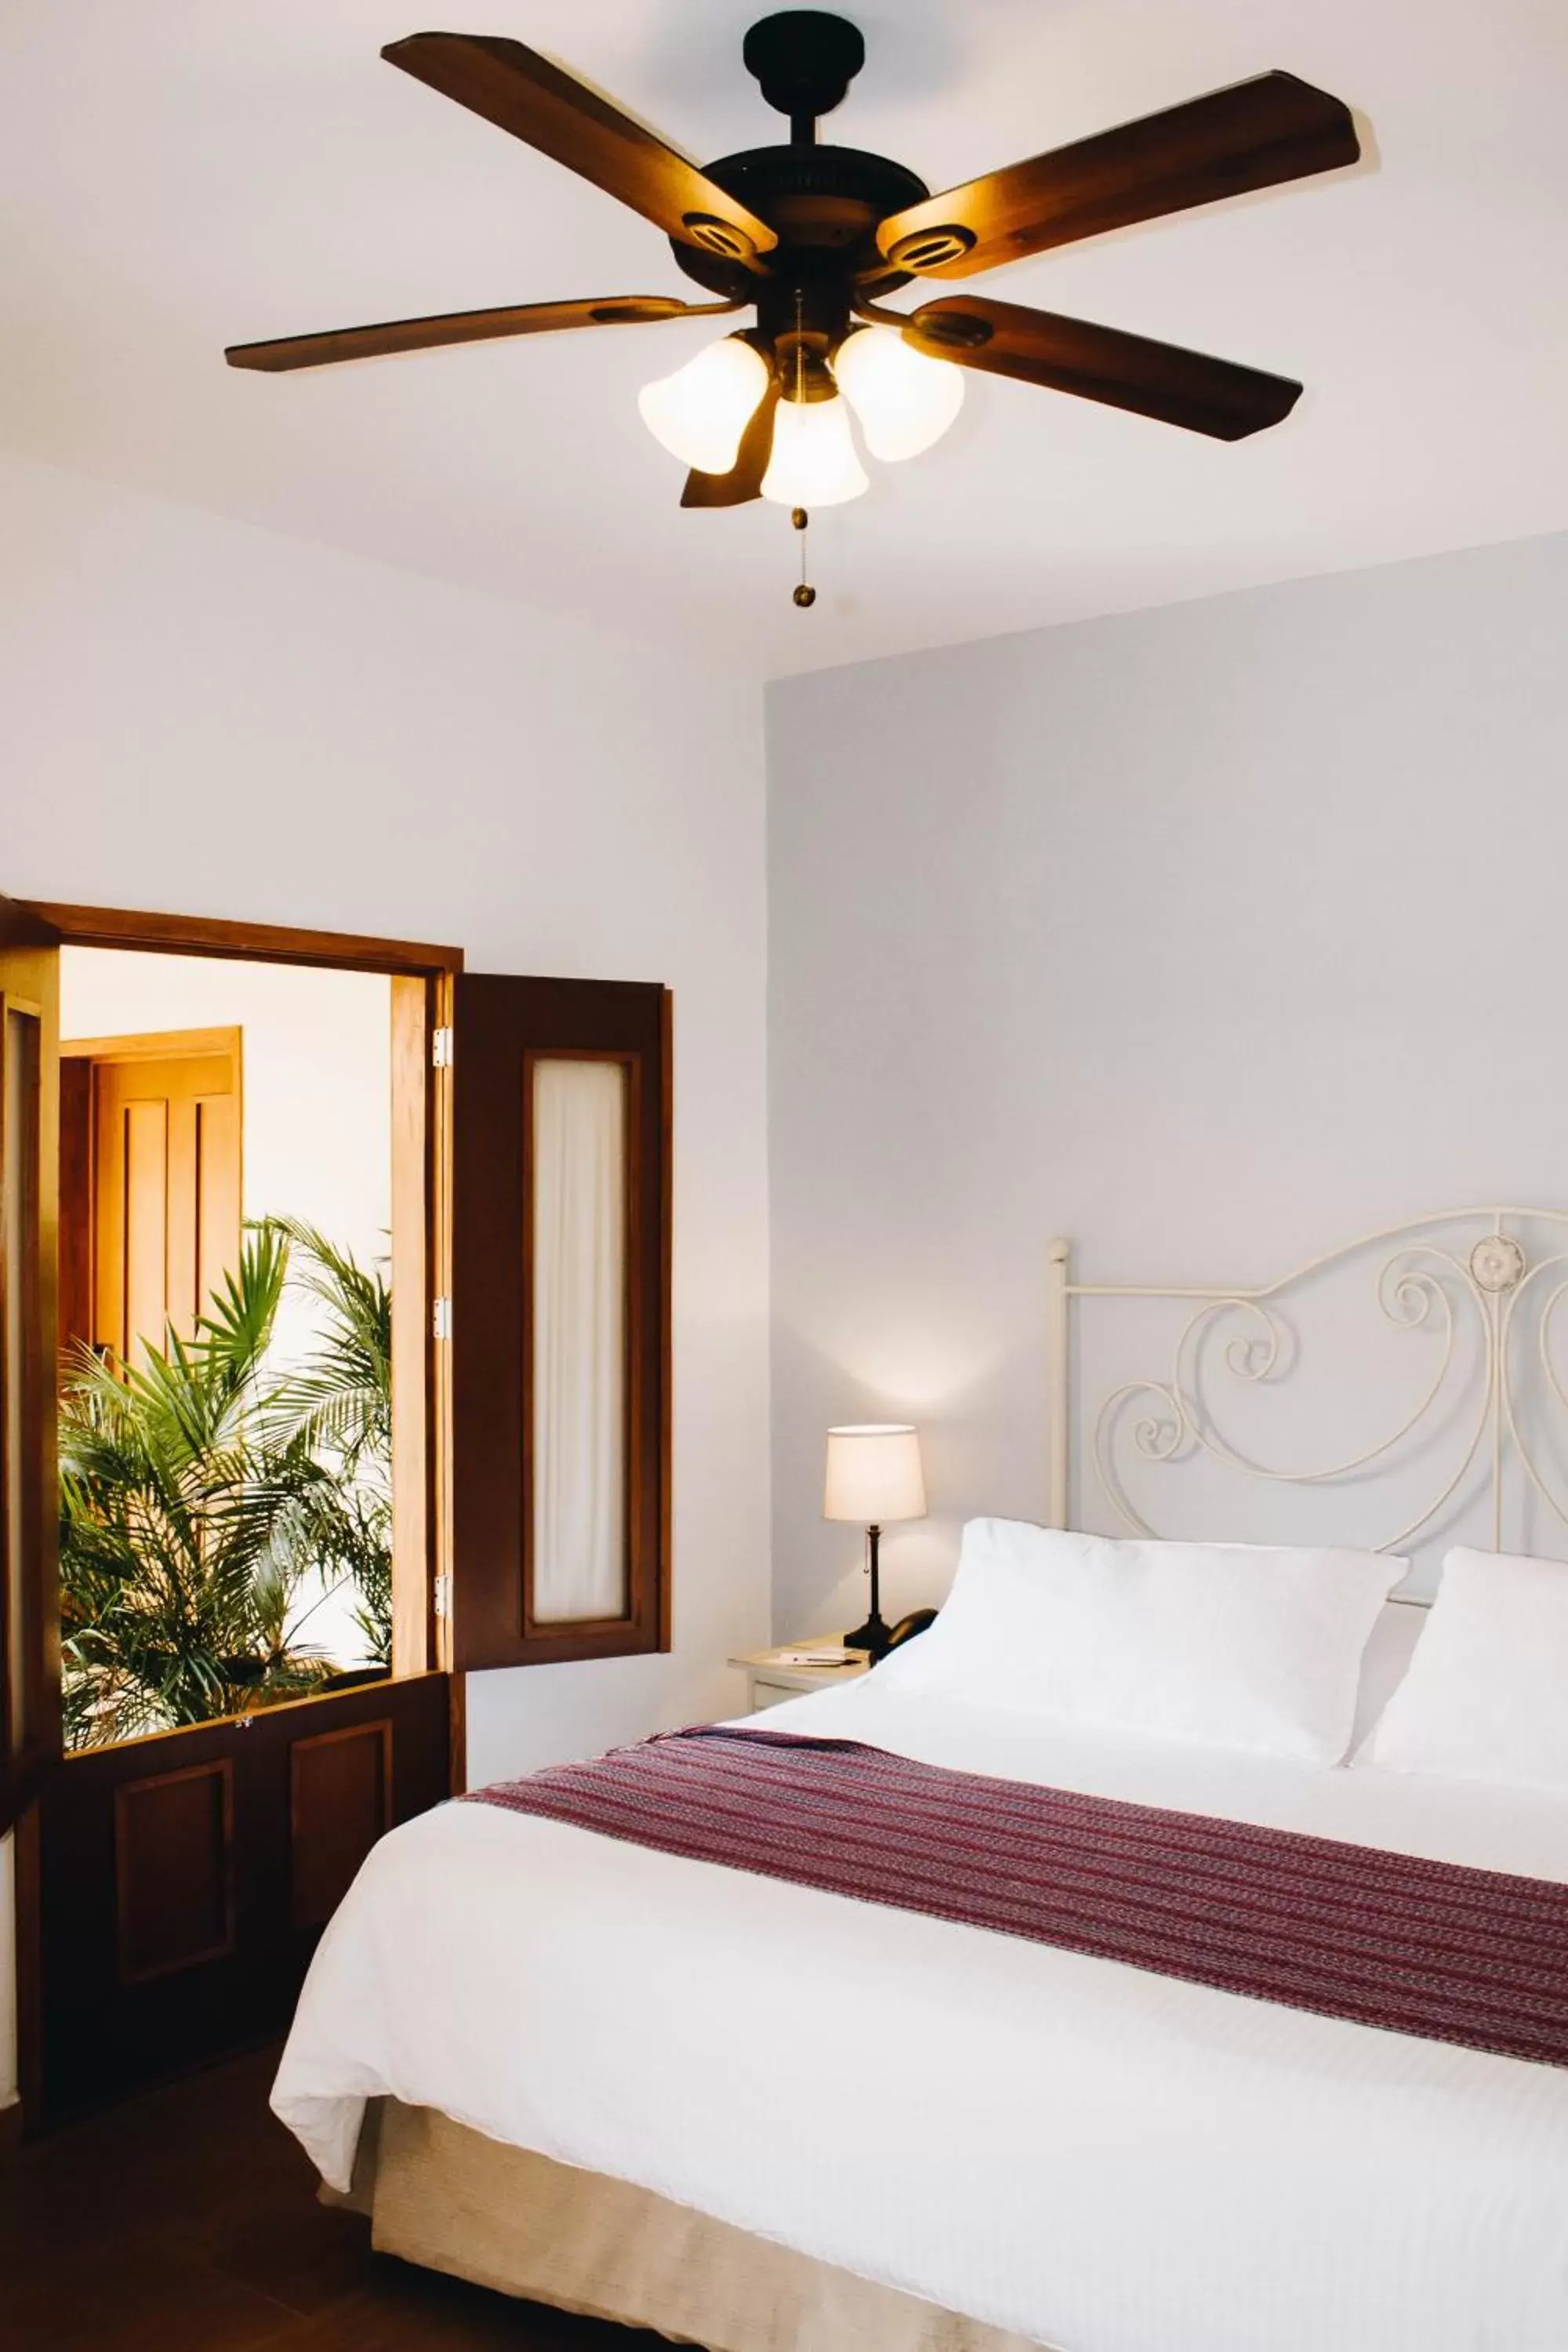 Bed in Hotel La Casona de Don Jorge